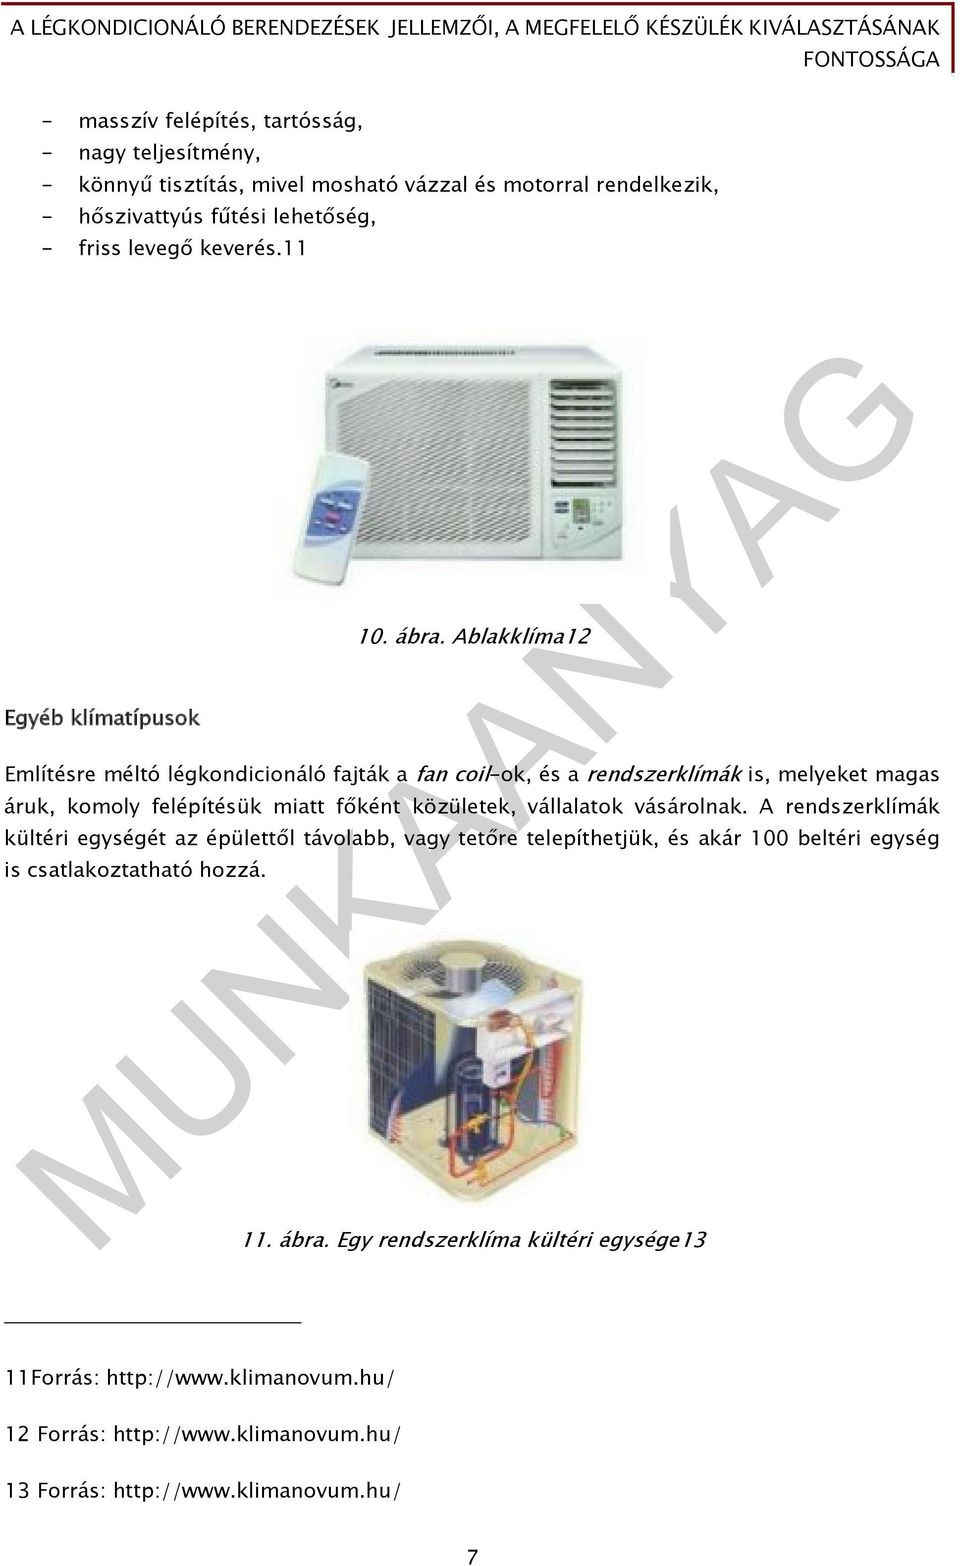 A légkondicionáló berendezések jellemzői, a megfelelő készülék  kiválasztásának fontossága - PDF Ingyenes letöltés